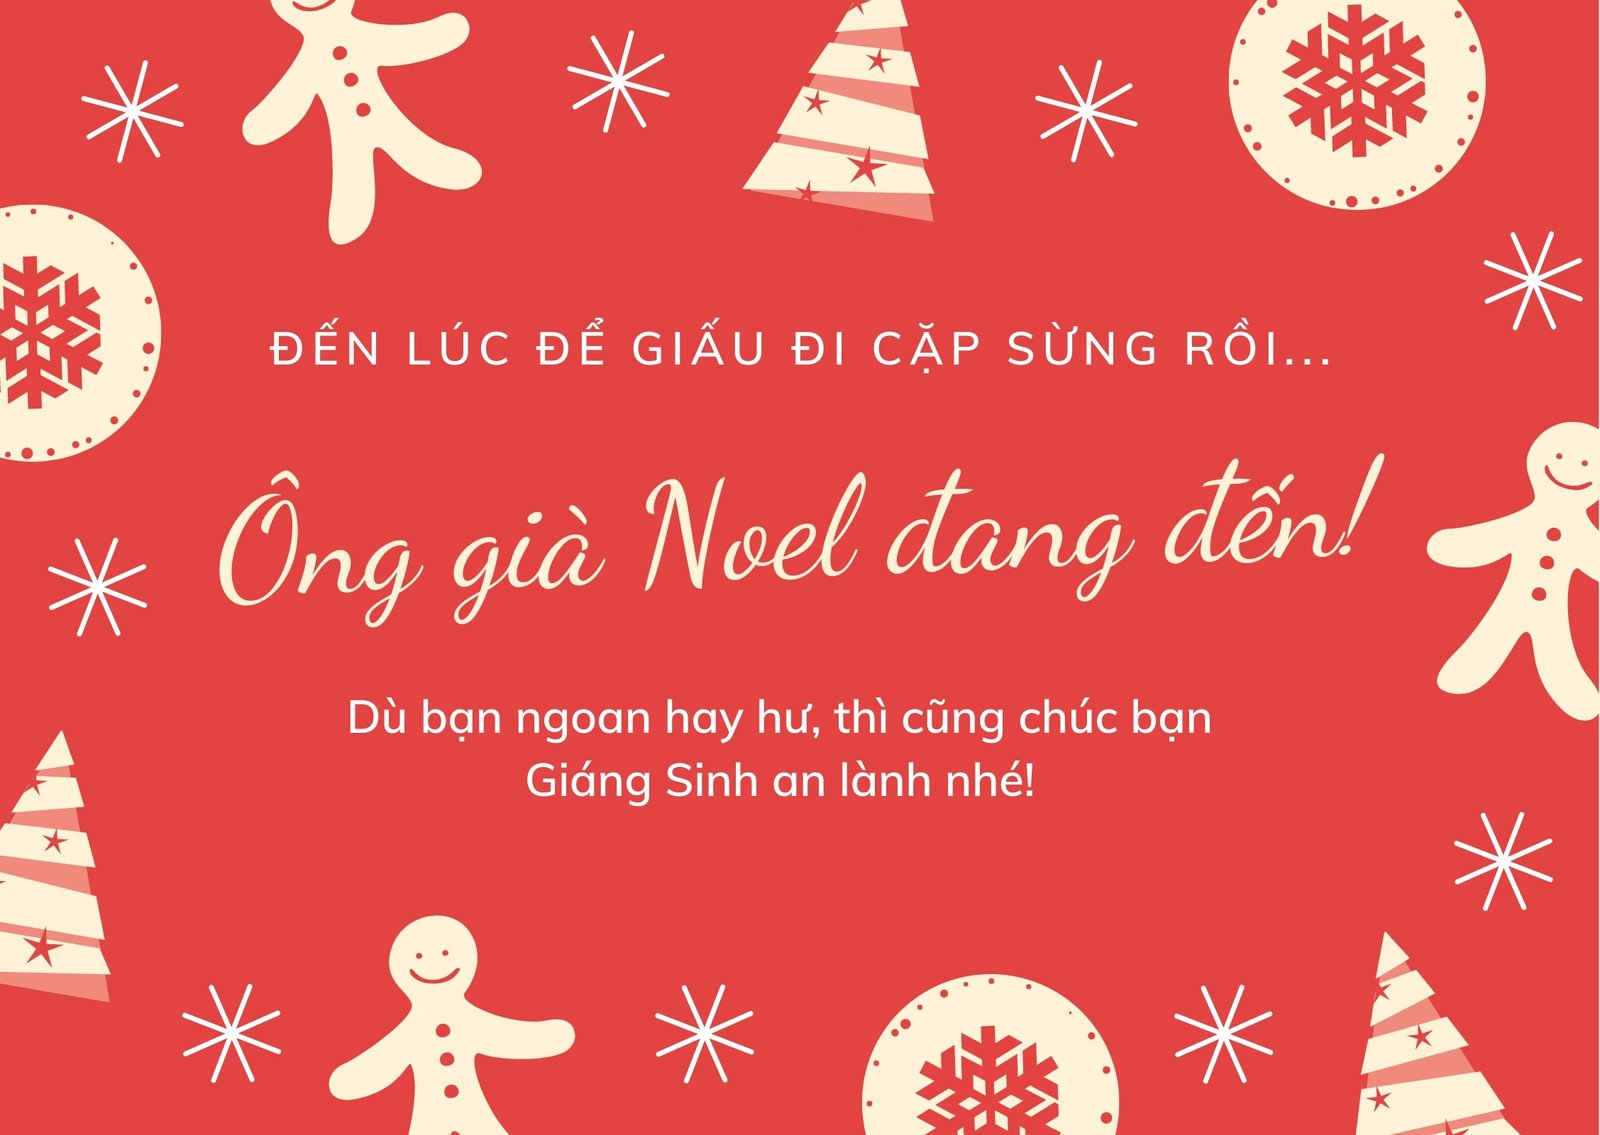 Thiệp Giáng Sinh trực tuyến là cách đơn giản, tiện lợi để gửi lời chúc đến những người thân yêu trong dịp lễ Giáng Sinh. Bức ảnh này sẽ giới thiệu với bạn những khung hình thiết kế độc đáo và hấp dẫn của các thiệp Giáng Sinh trực tuyến.